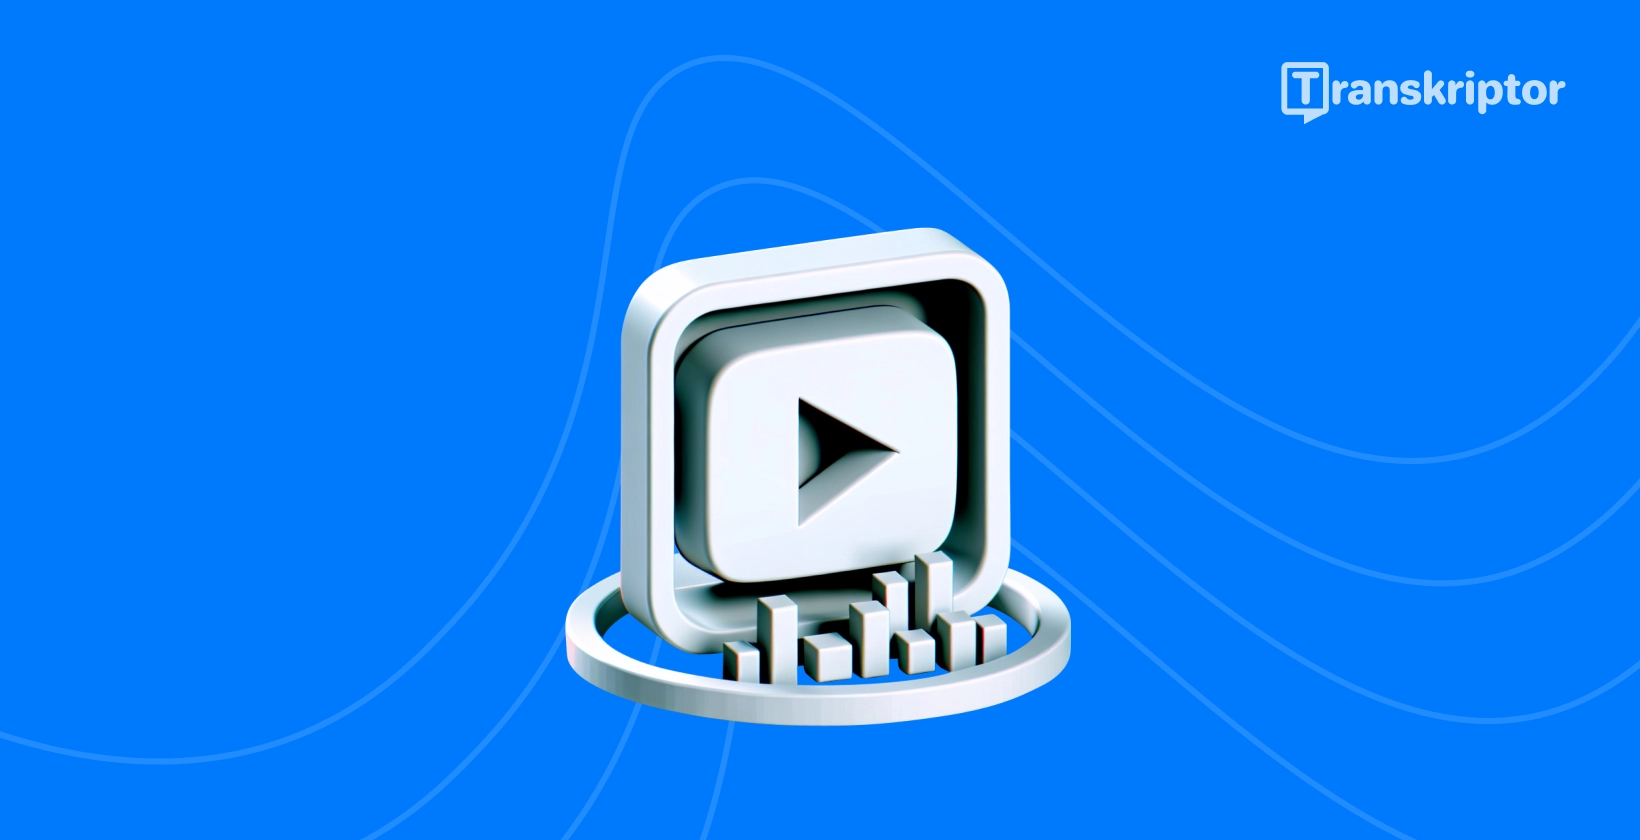 Buton de redare și transcriere vizuală ilustrând metode pentru transcrierea eficientă YouTube videoclipurilor.